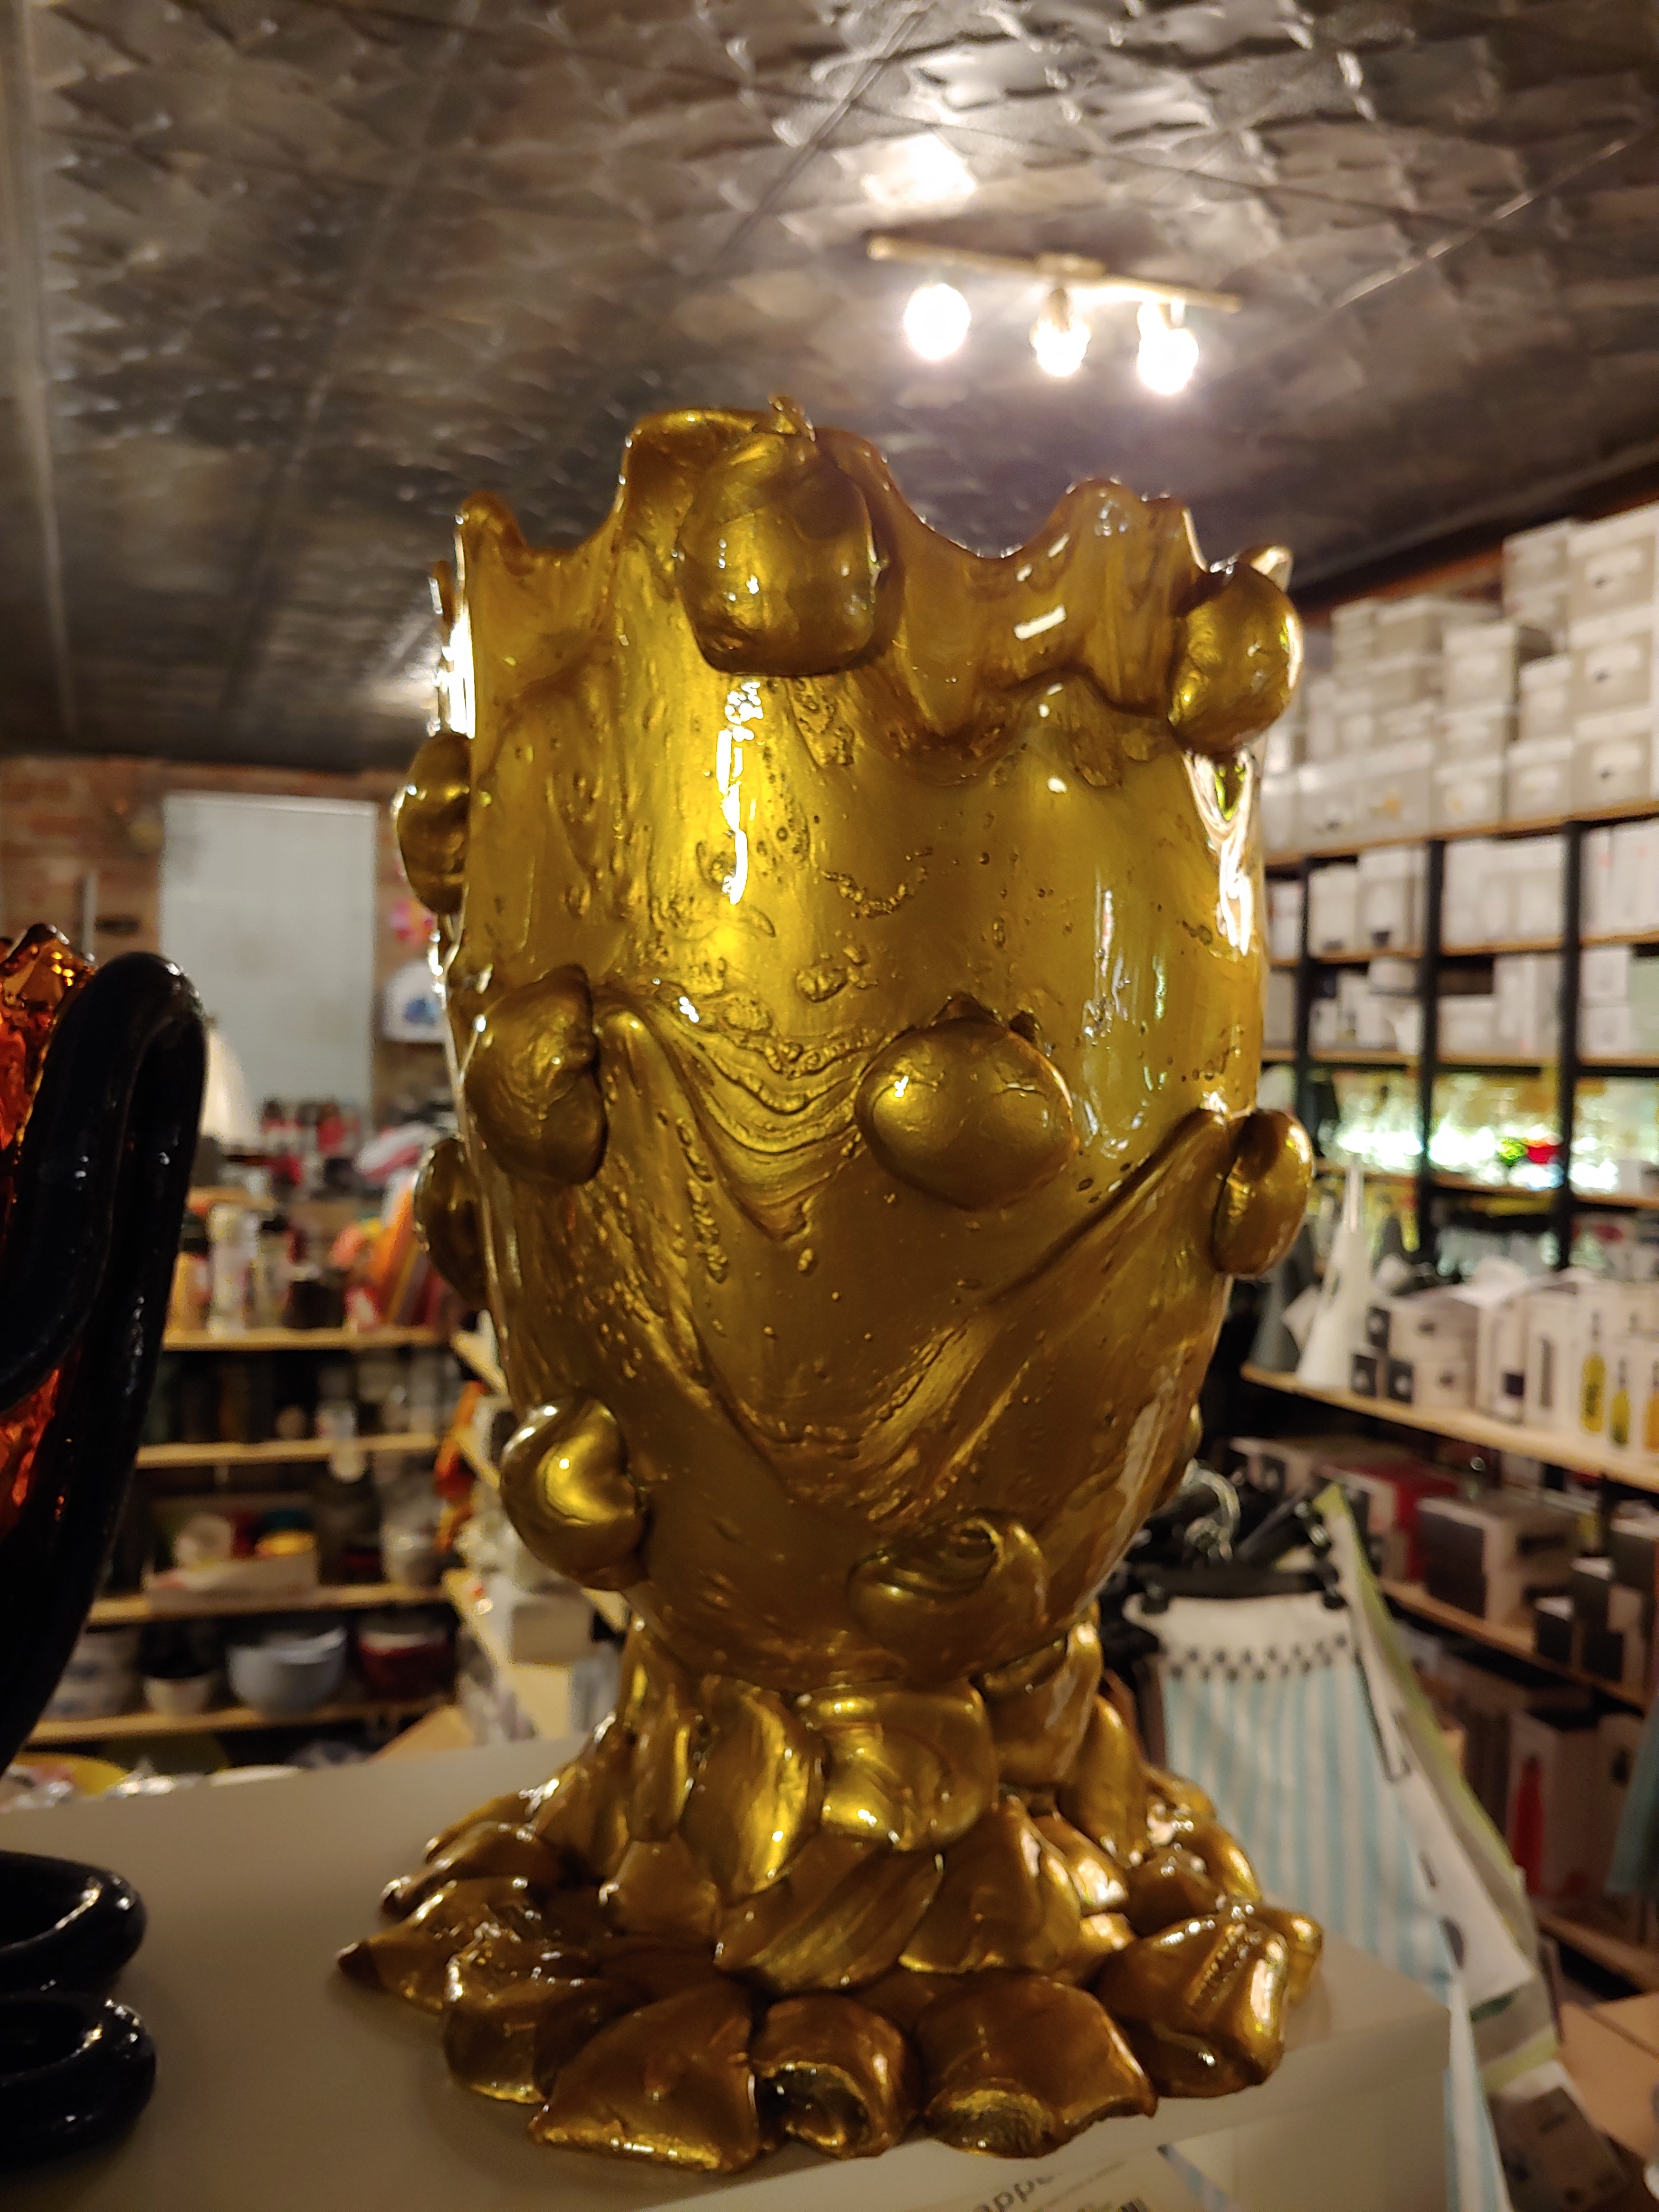 Gaetano Pesce fish vase Large Nugget Gold